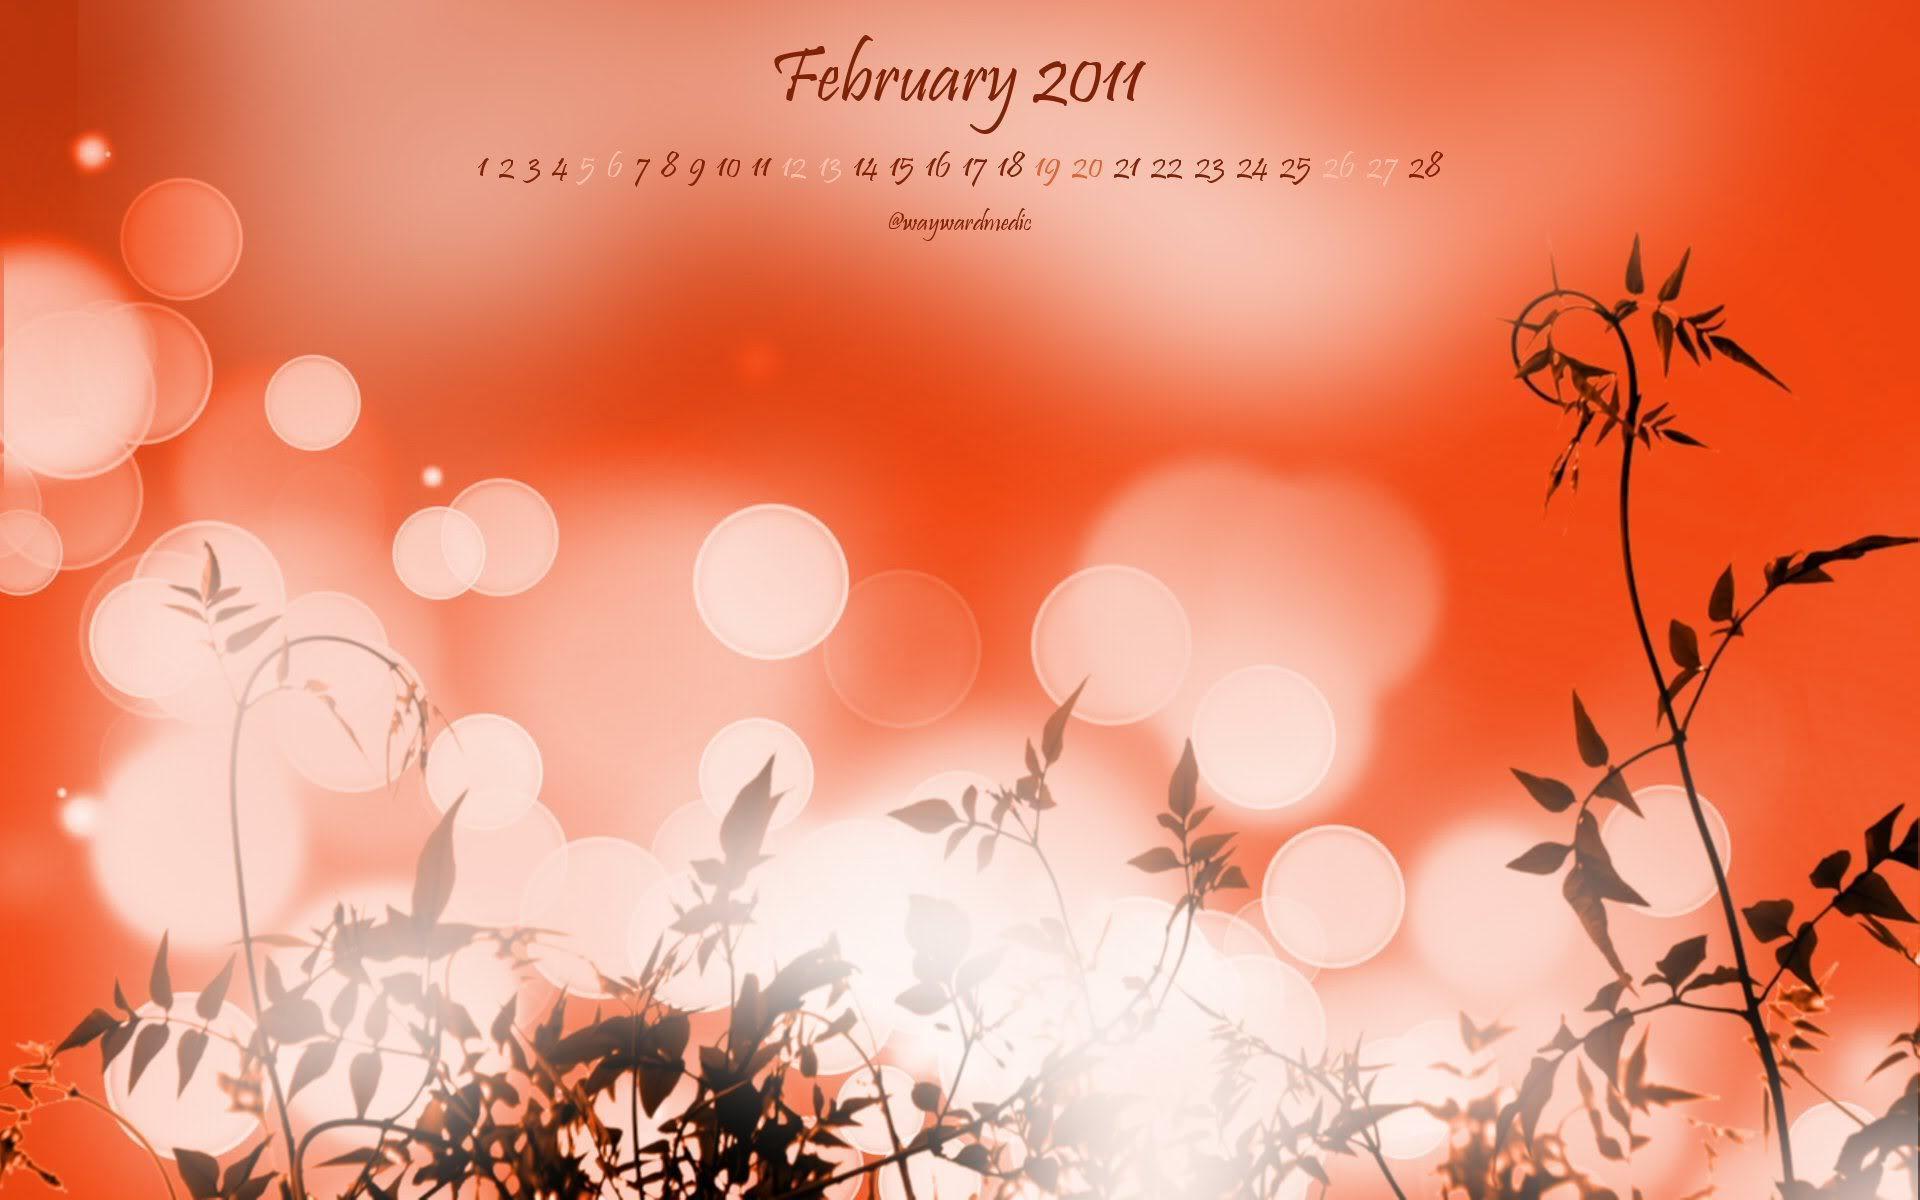 essential pepper: February 2011 Desktop Wallpaper Calendar